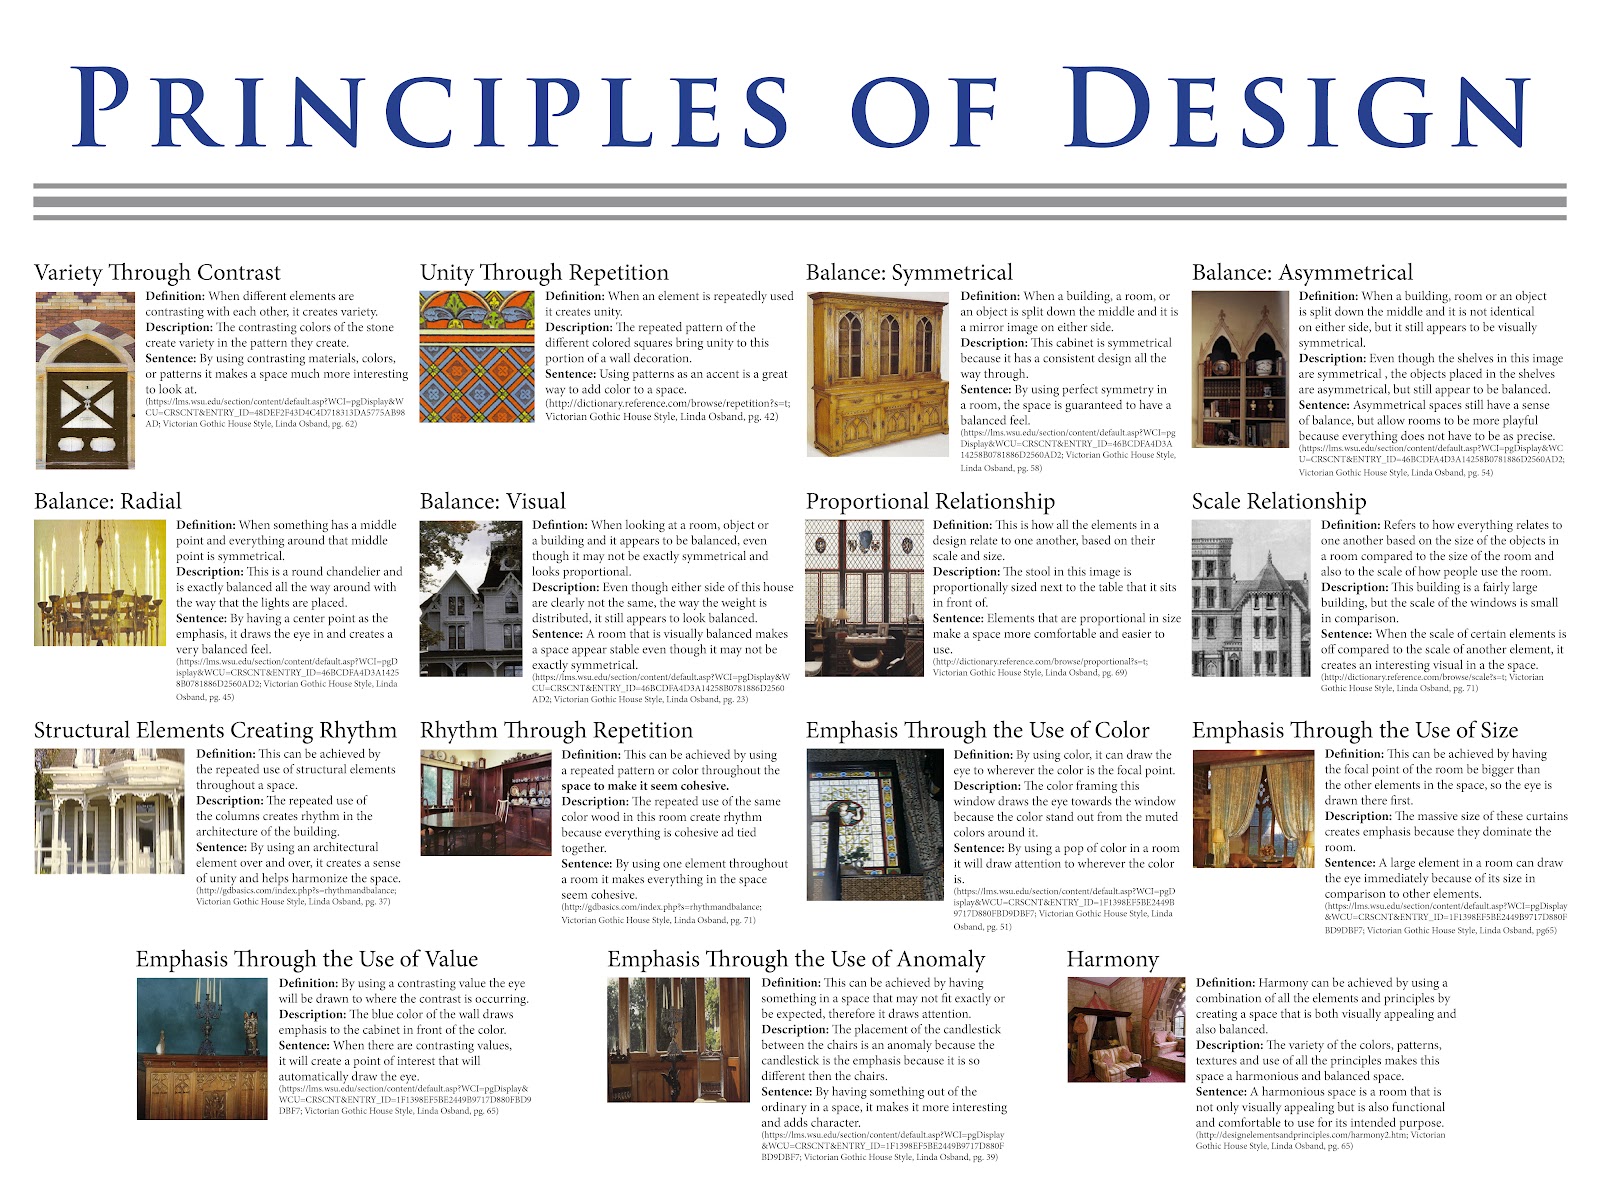 Annie Borges Design Portfolio: Principles of Design